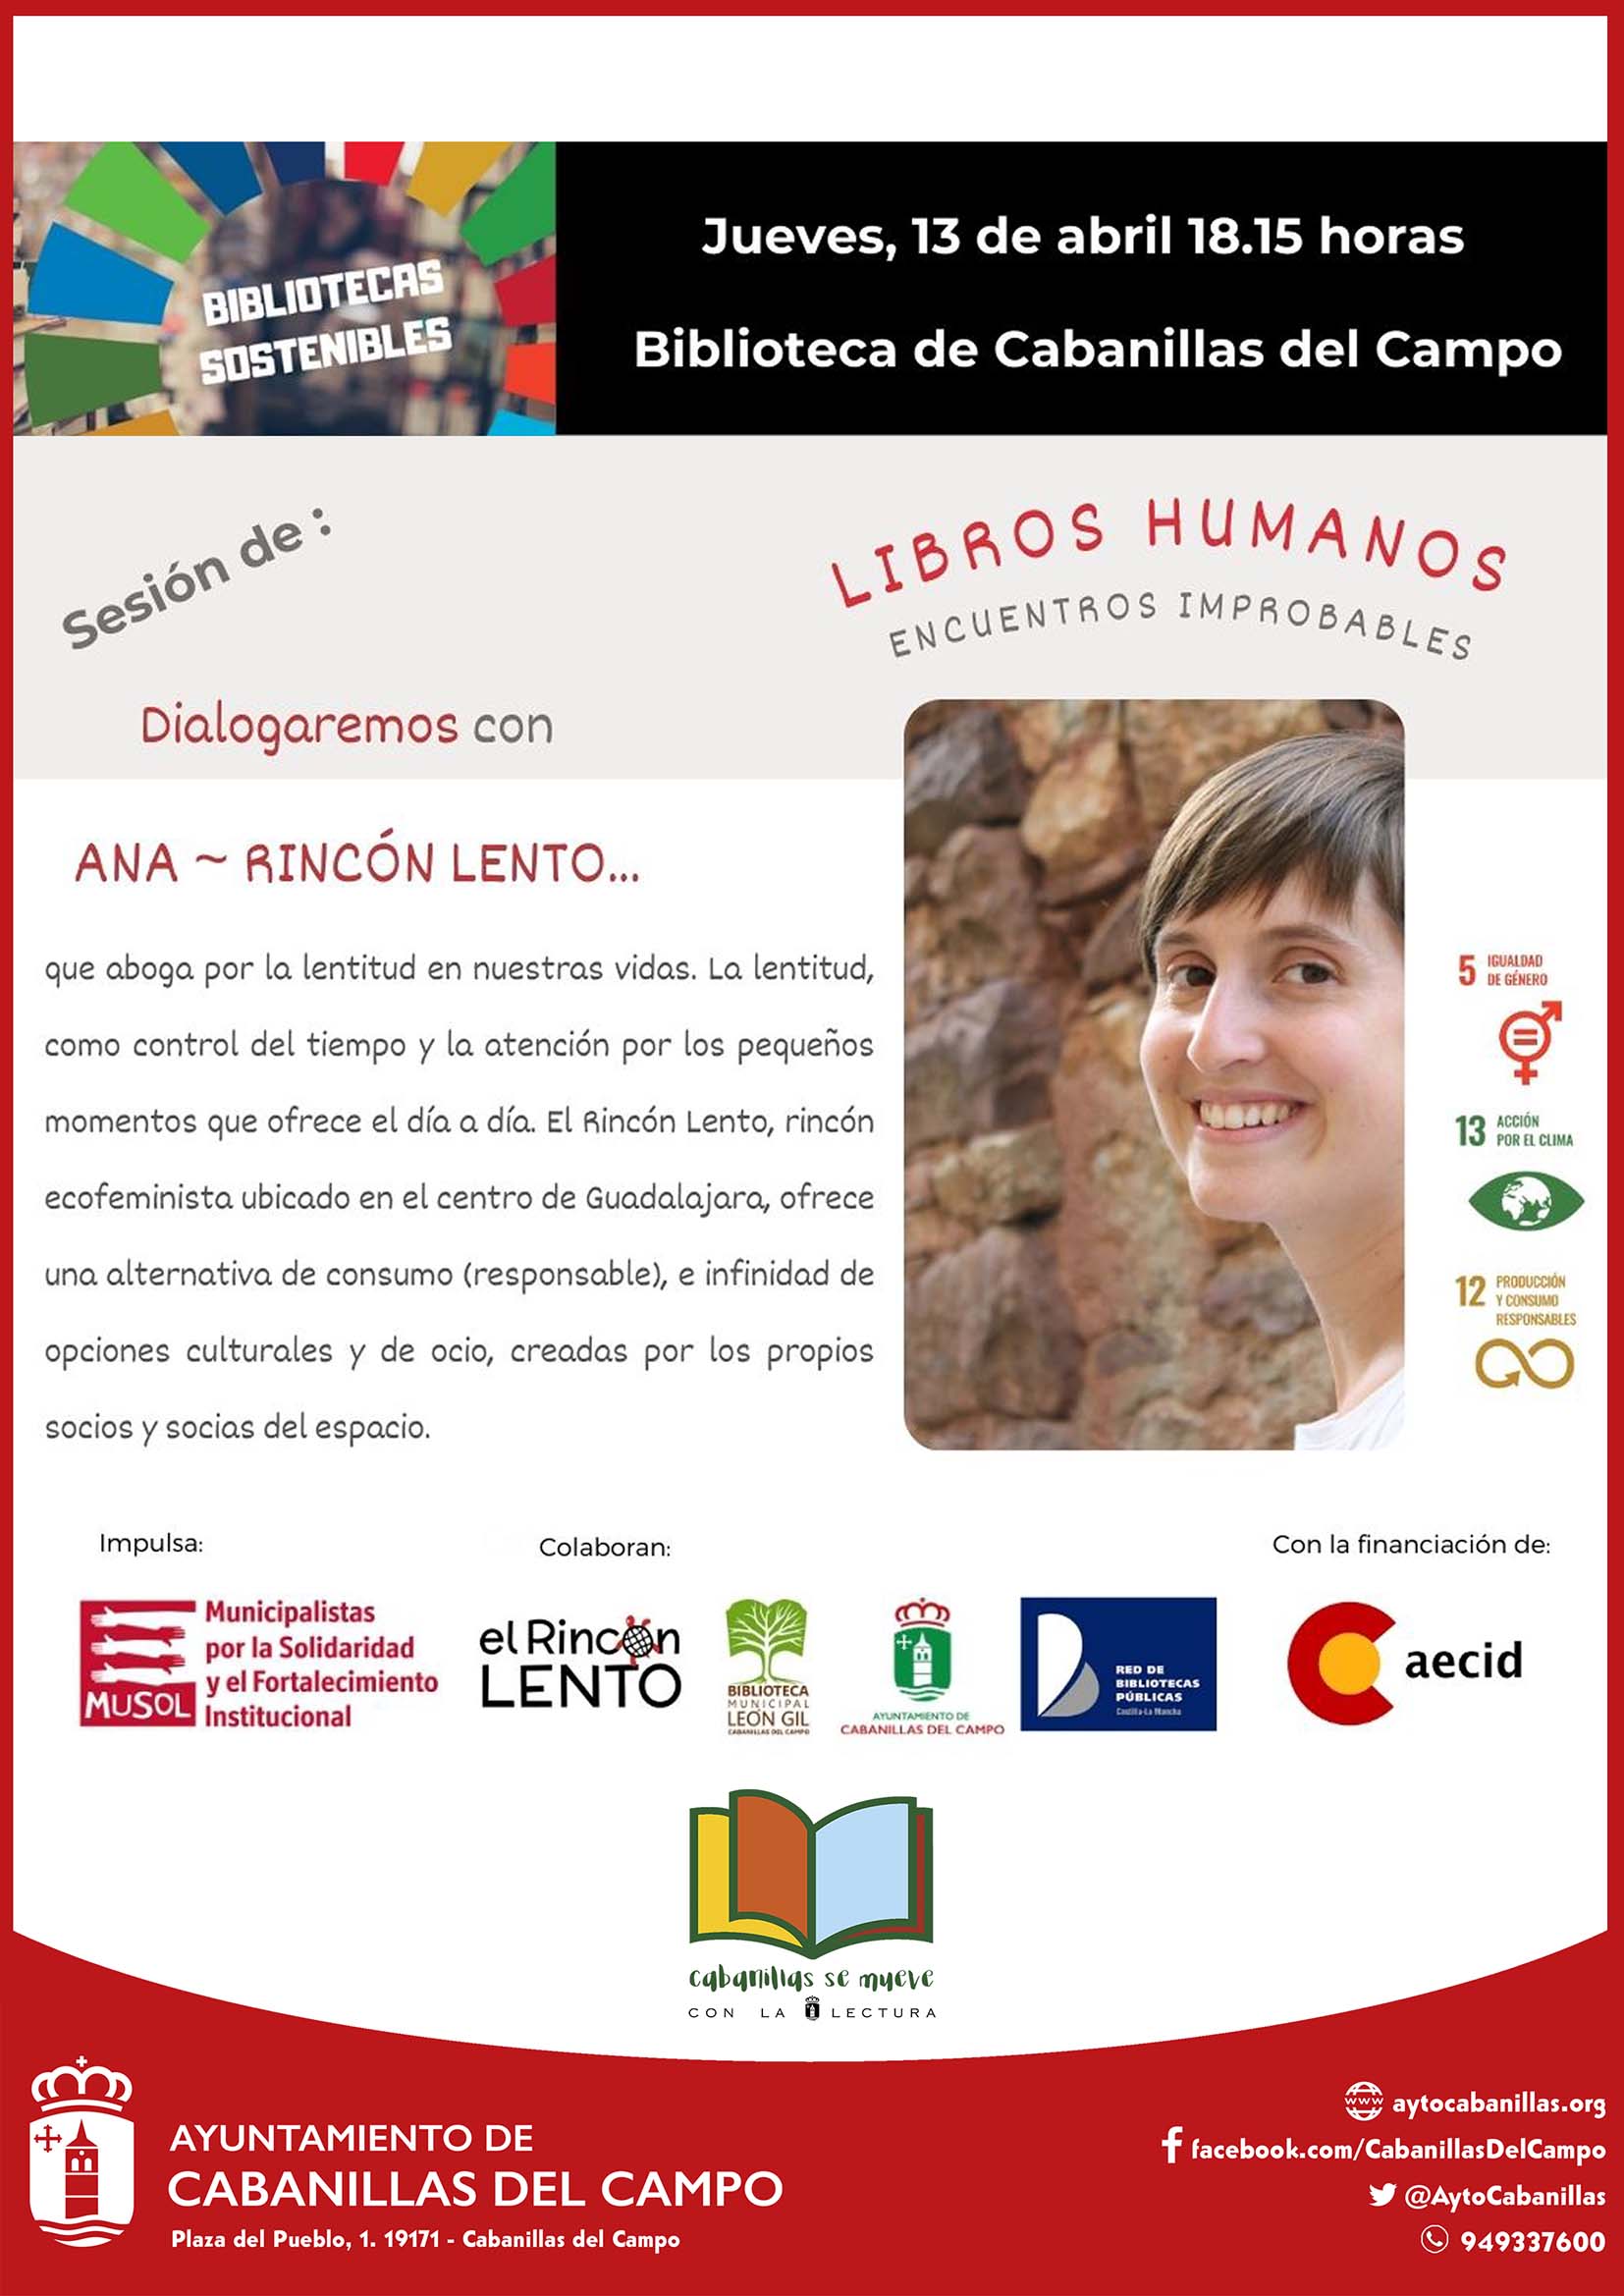 "Libros Humanos, Encuentros Improbables: La Biblioteca Municipal León Gil de Cabanillas acoge una charla sobre Desarrollo Sostenible"